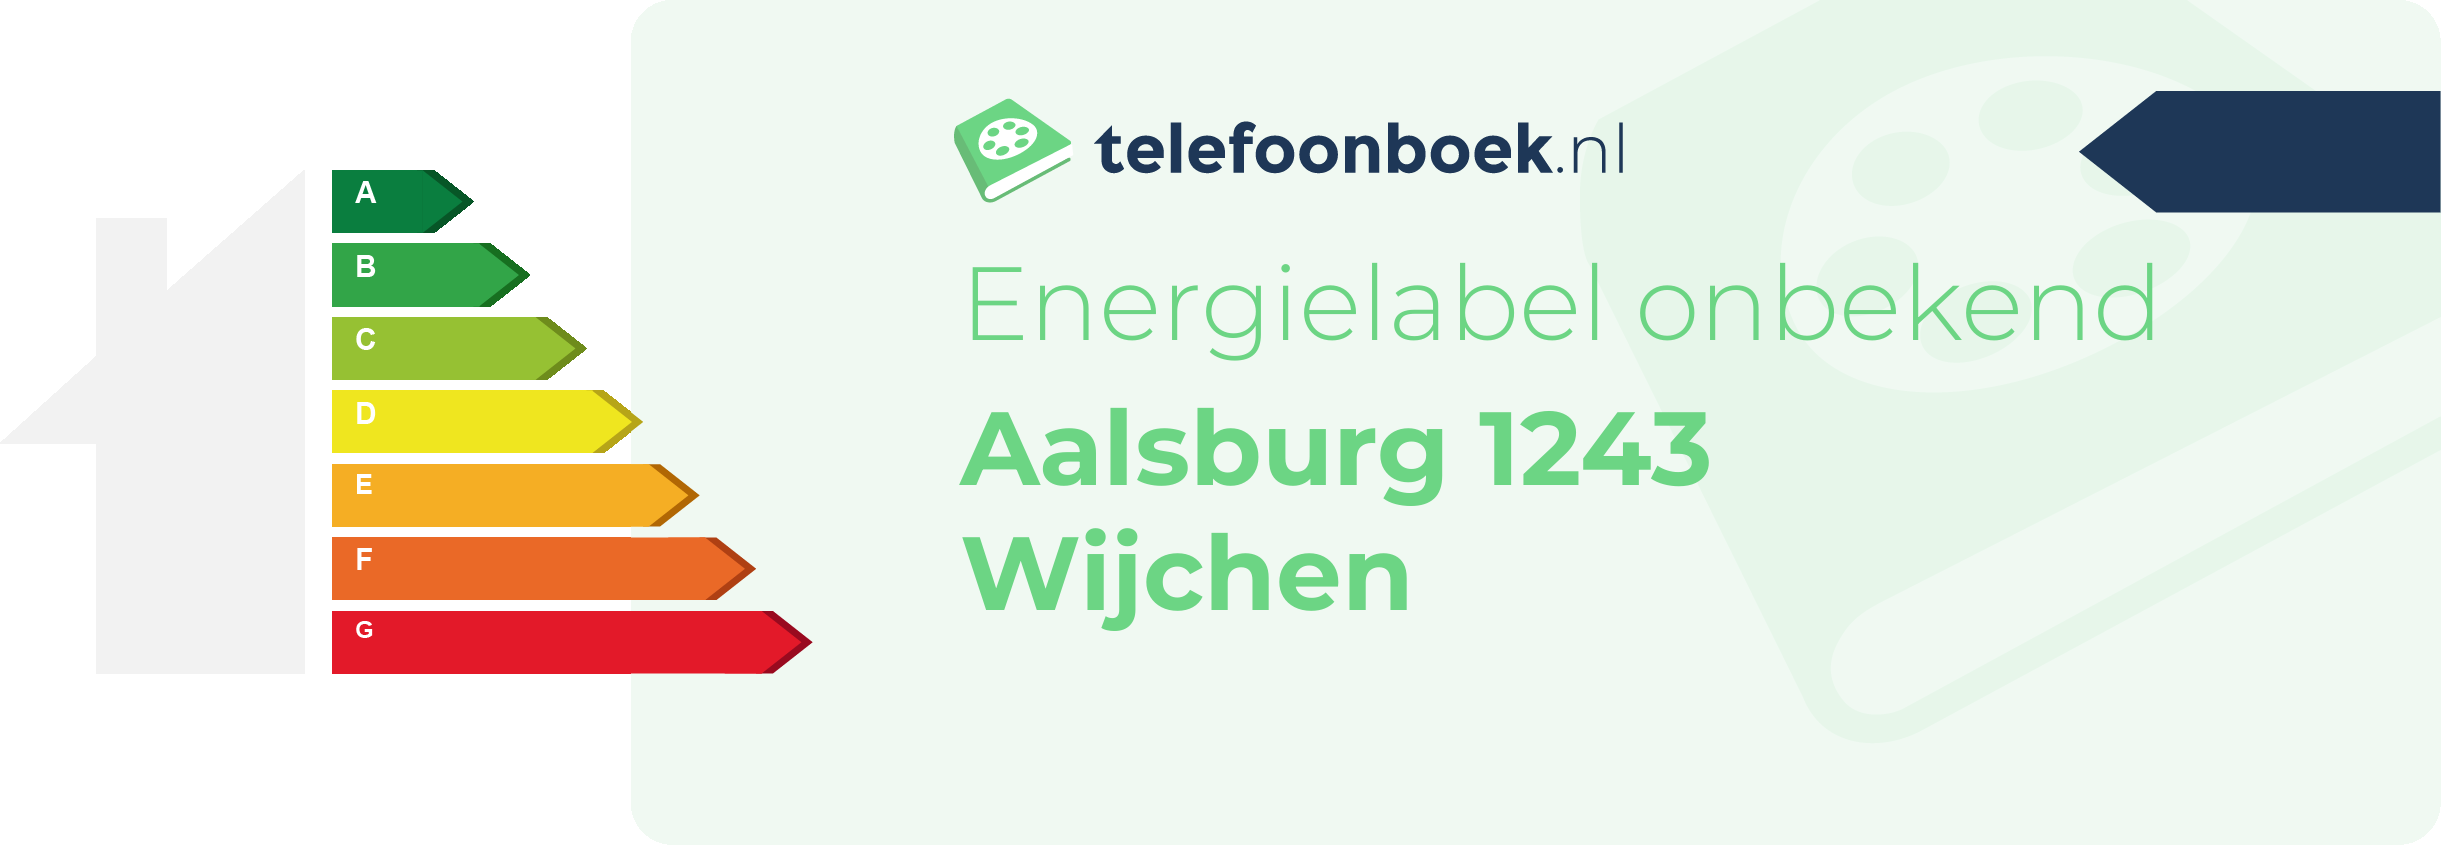 Energielabel Aalsburg 1243 Wijchen